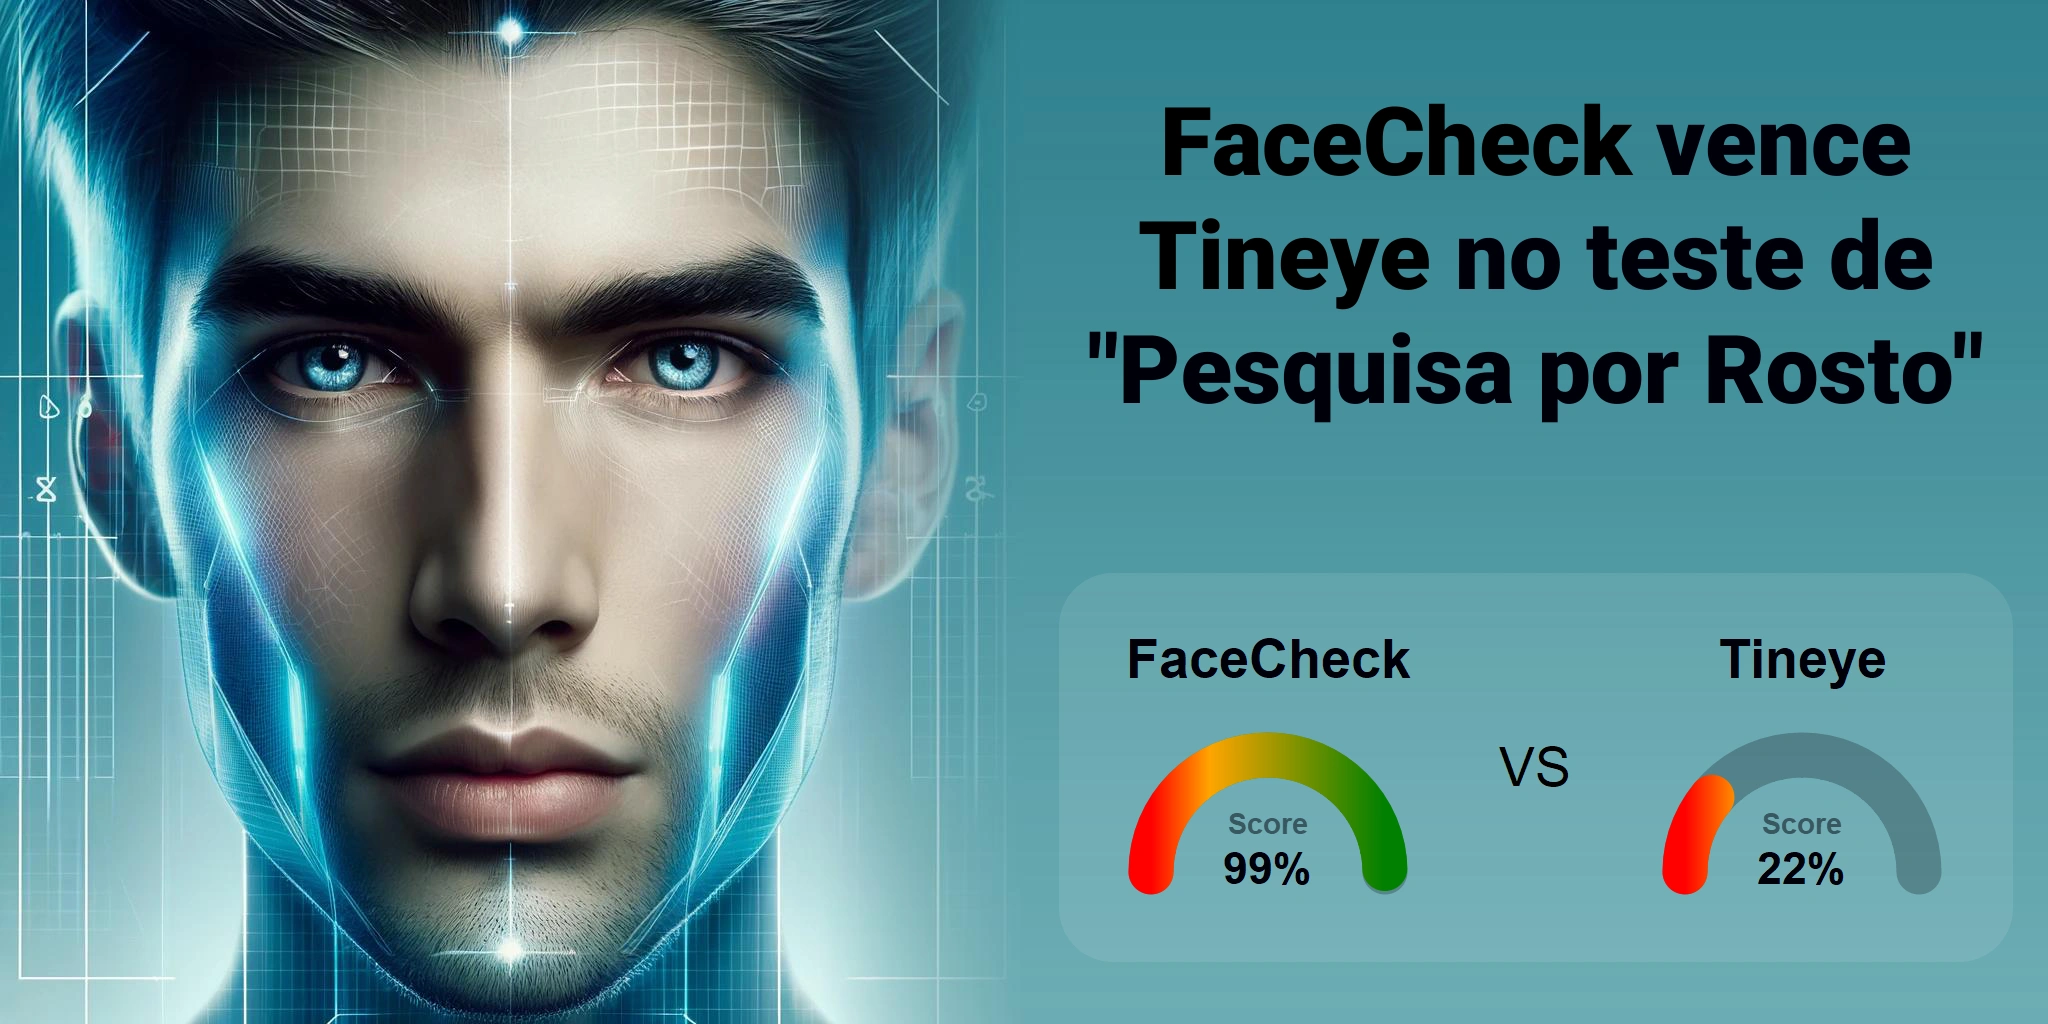 Qual é melhor para busca de rostos: <br>FaceCheck ou Tineye?